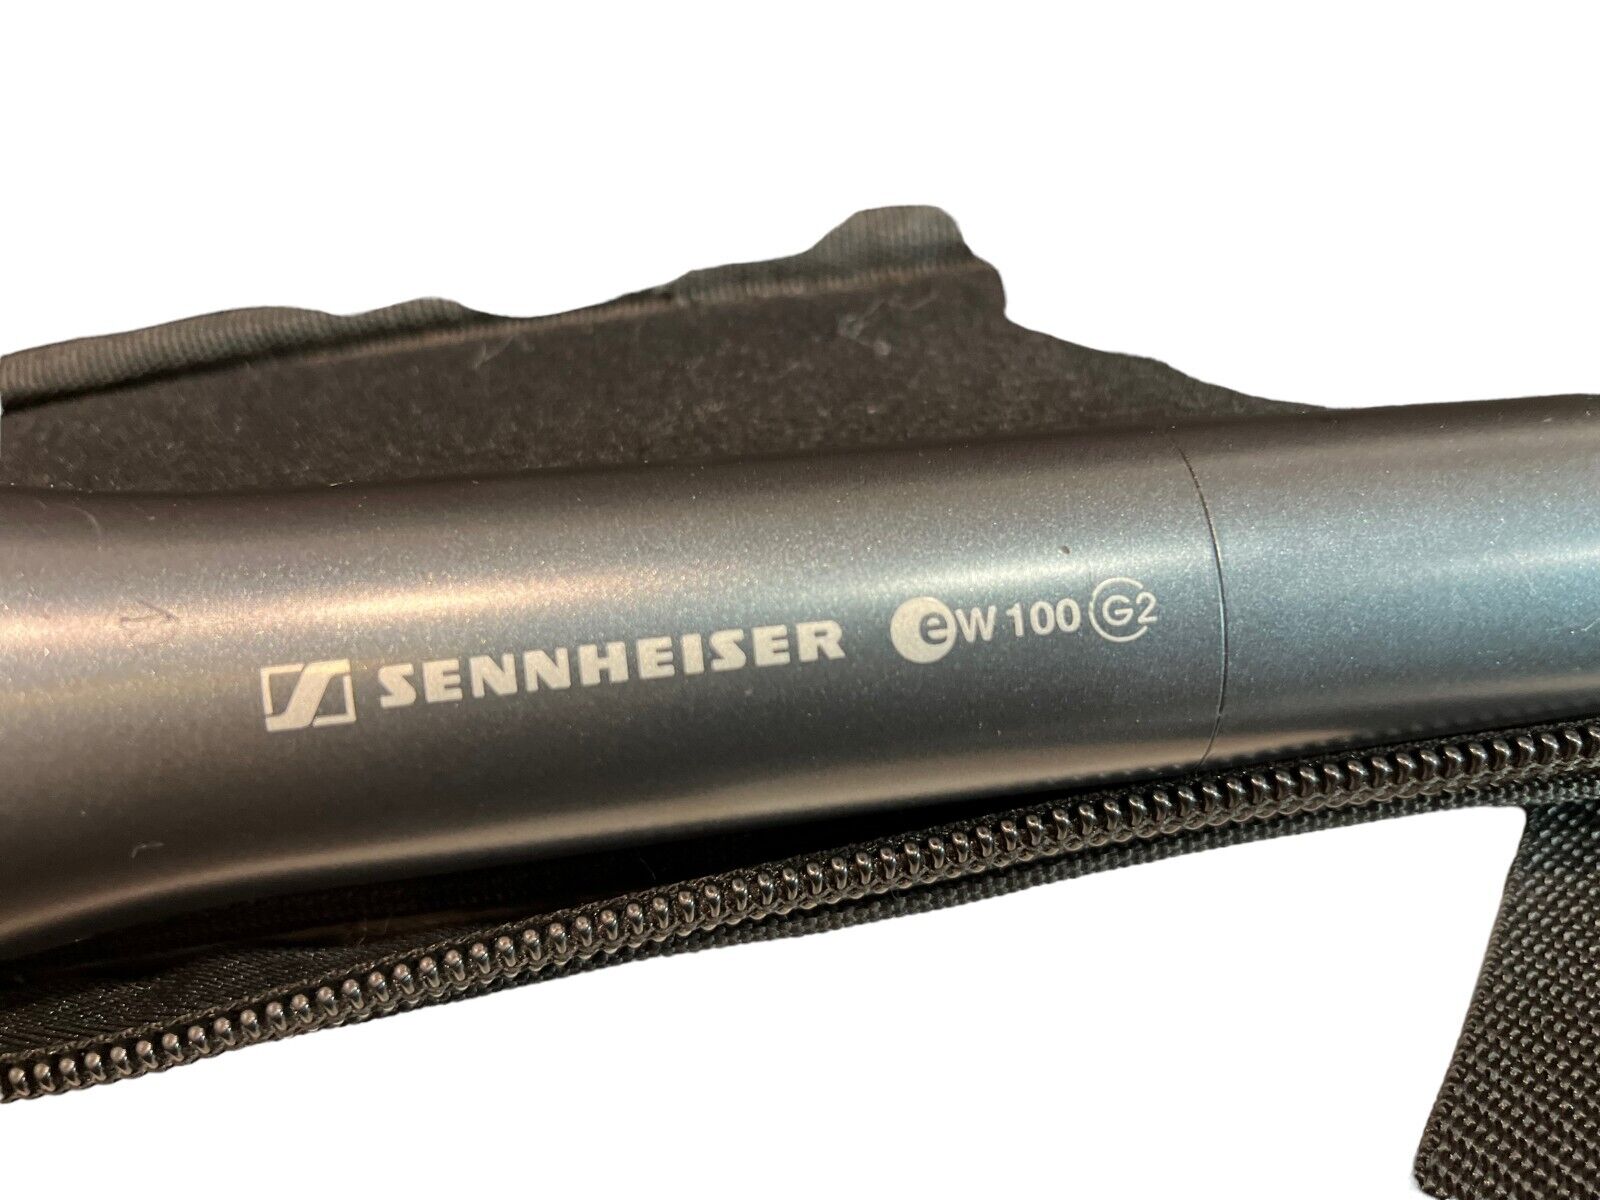 Sennheiser eW 100 G2 Receiver + Mikrofon +eW 300 G2 + HT 747 Headset 786-822 MHz